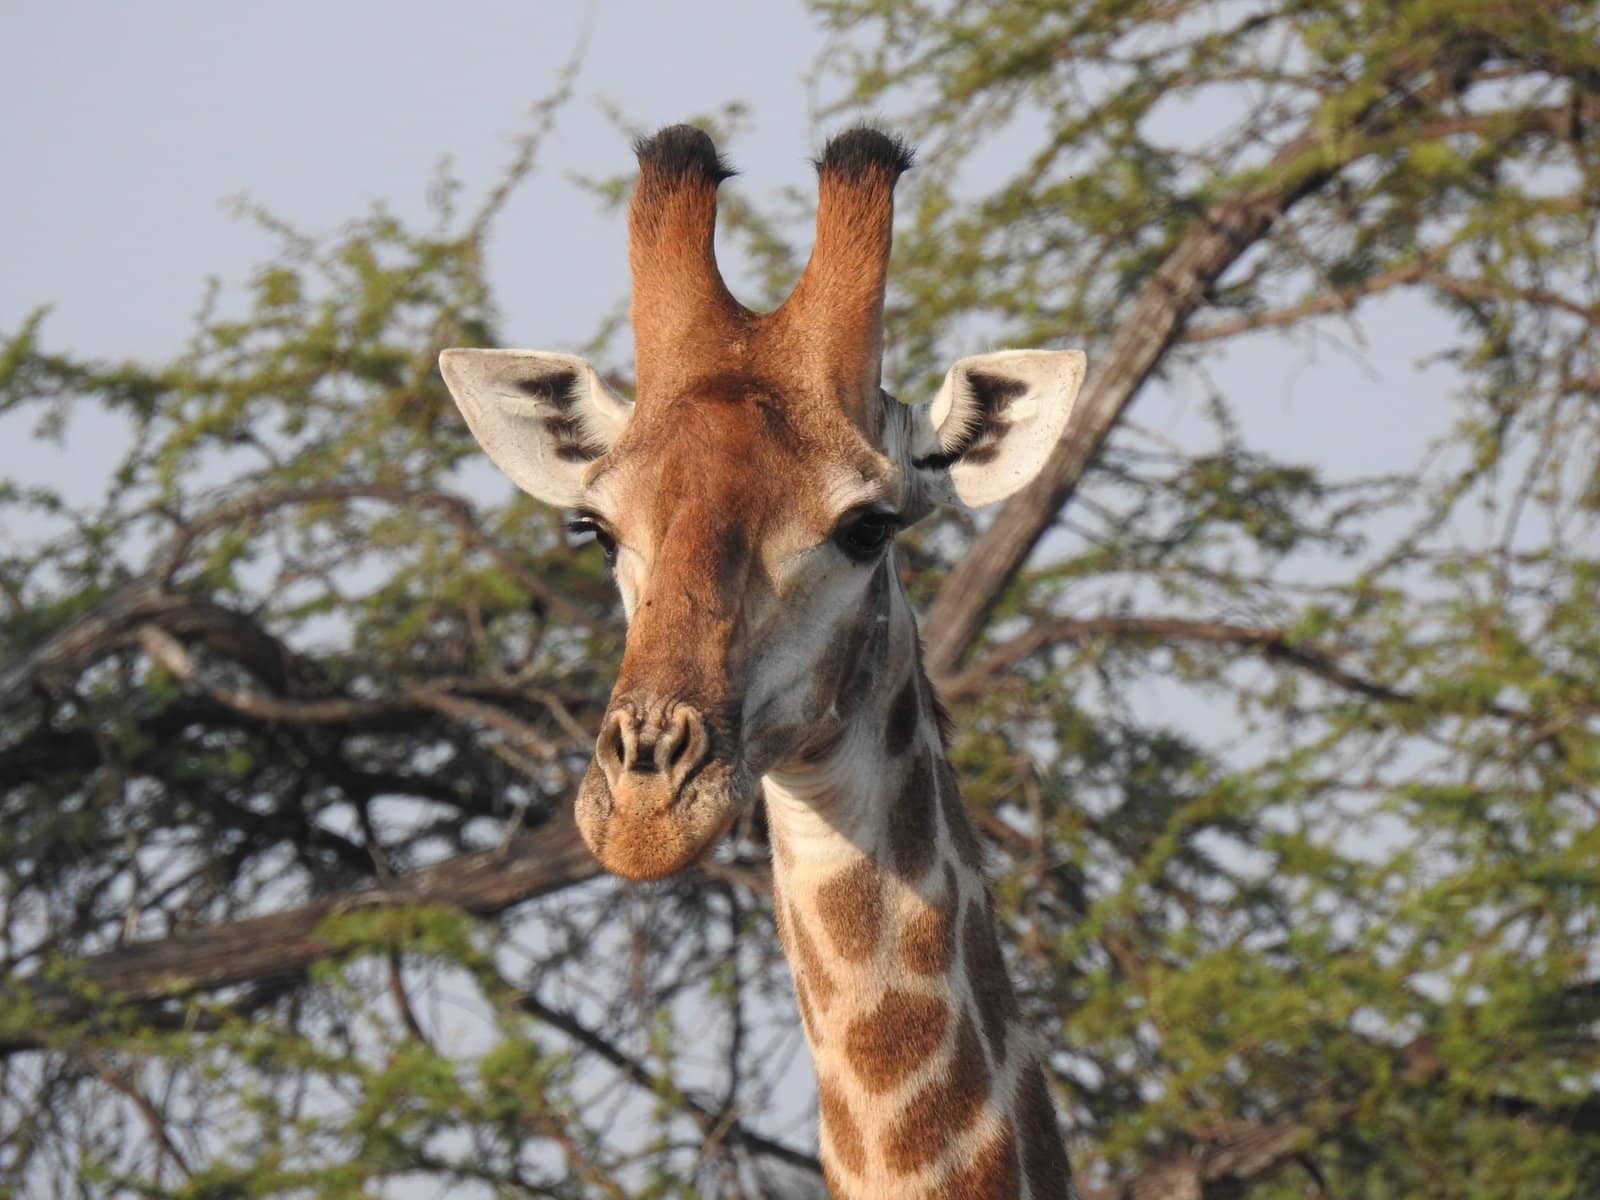 Giraffe - Kenya Safari